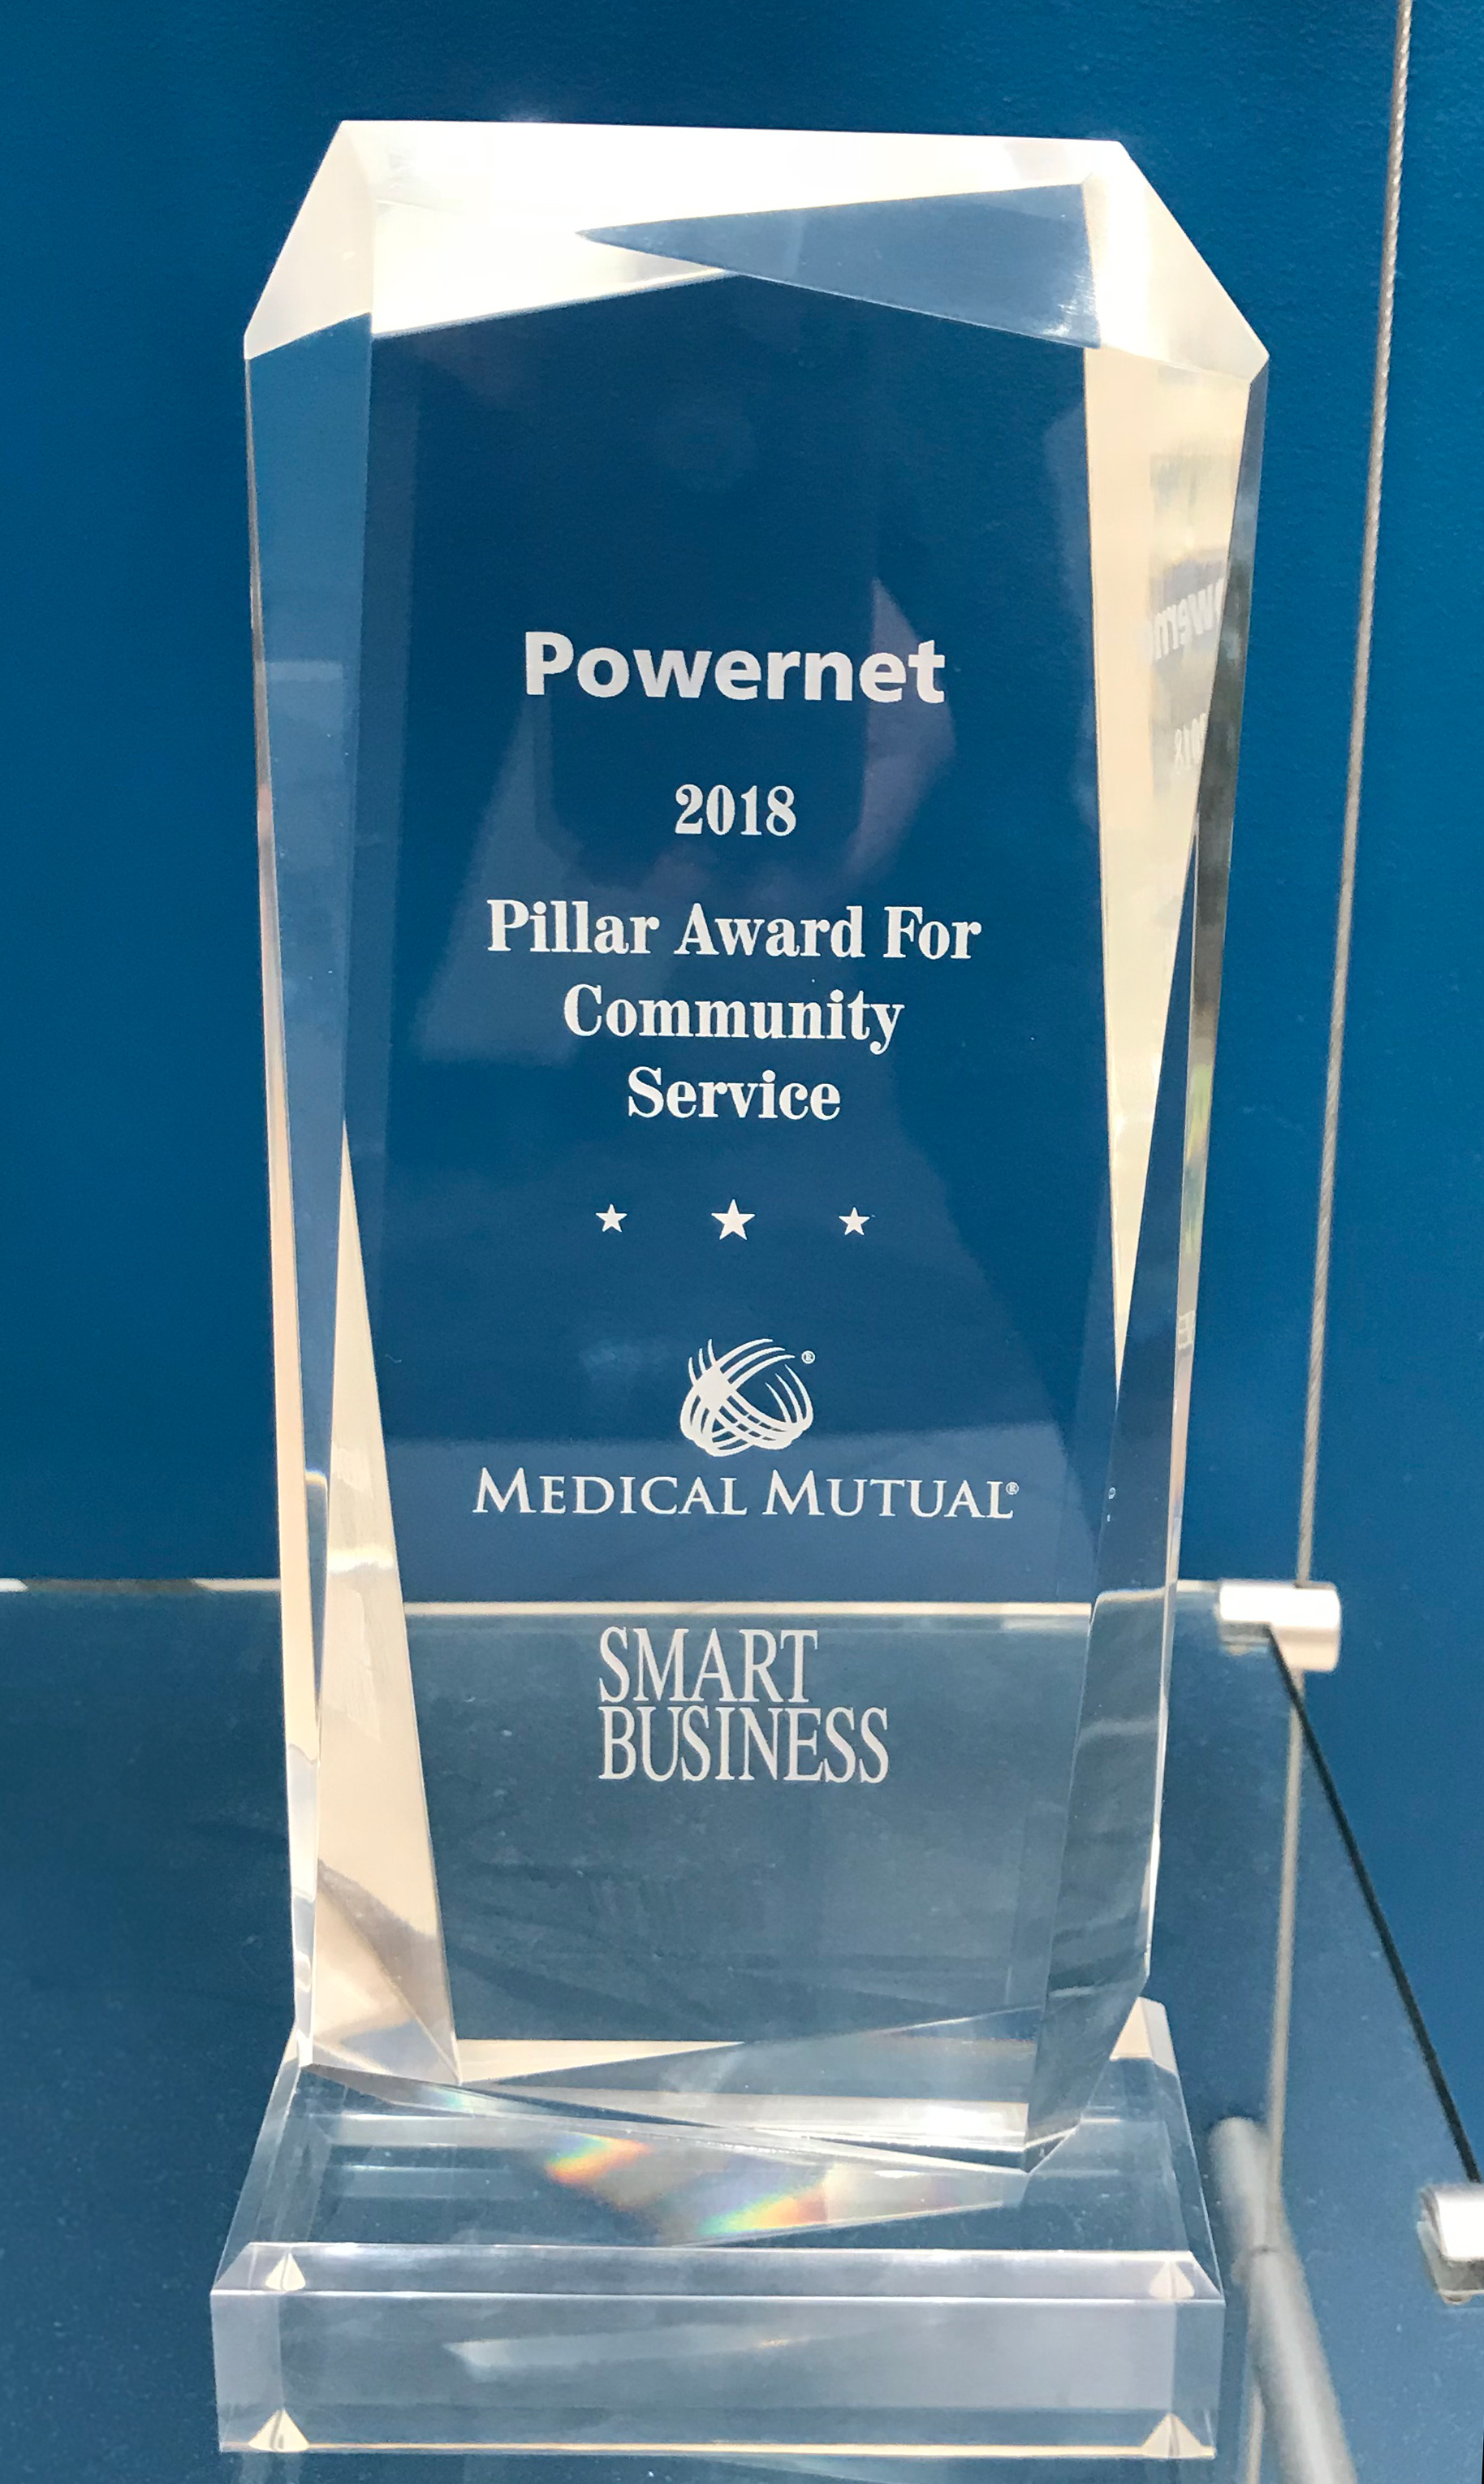 Powernet's 2018 Pillar Award